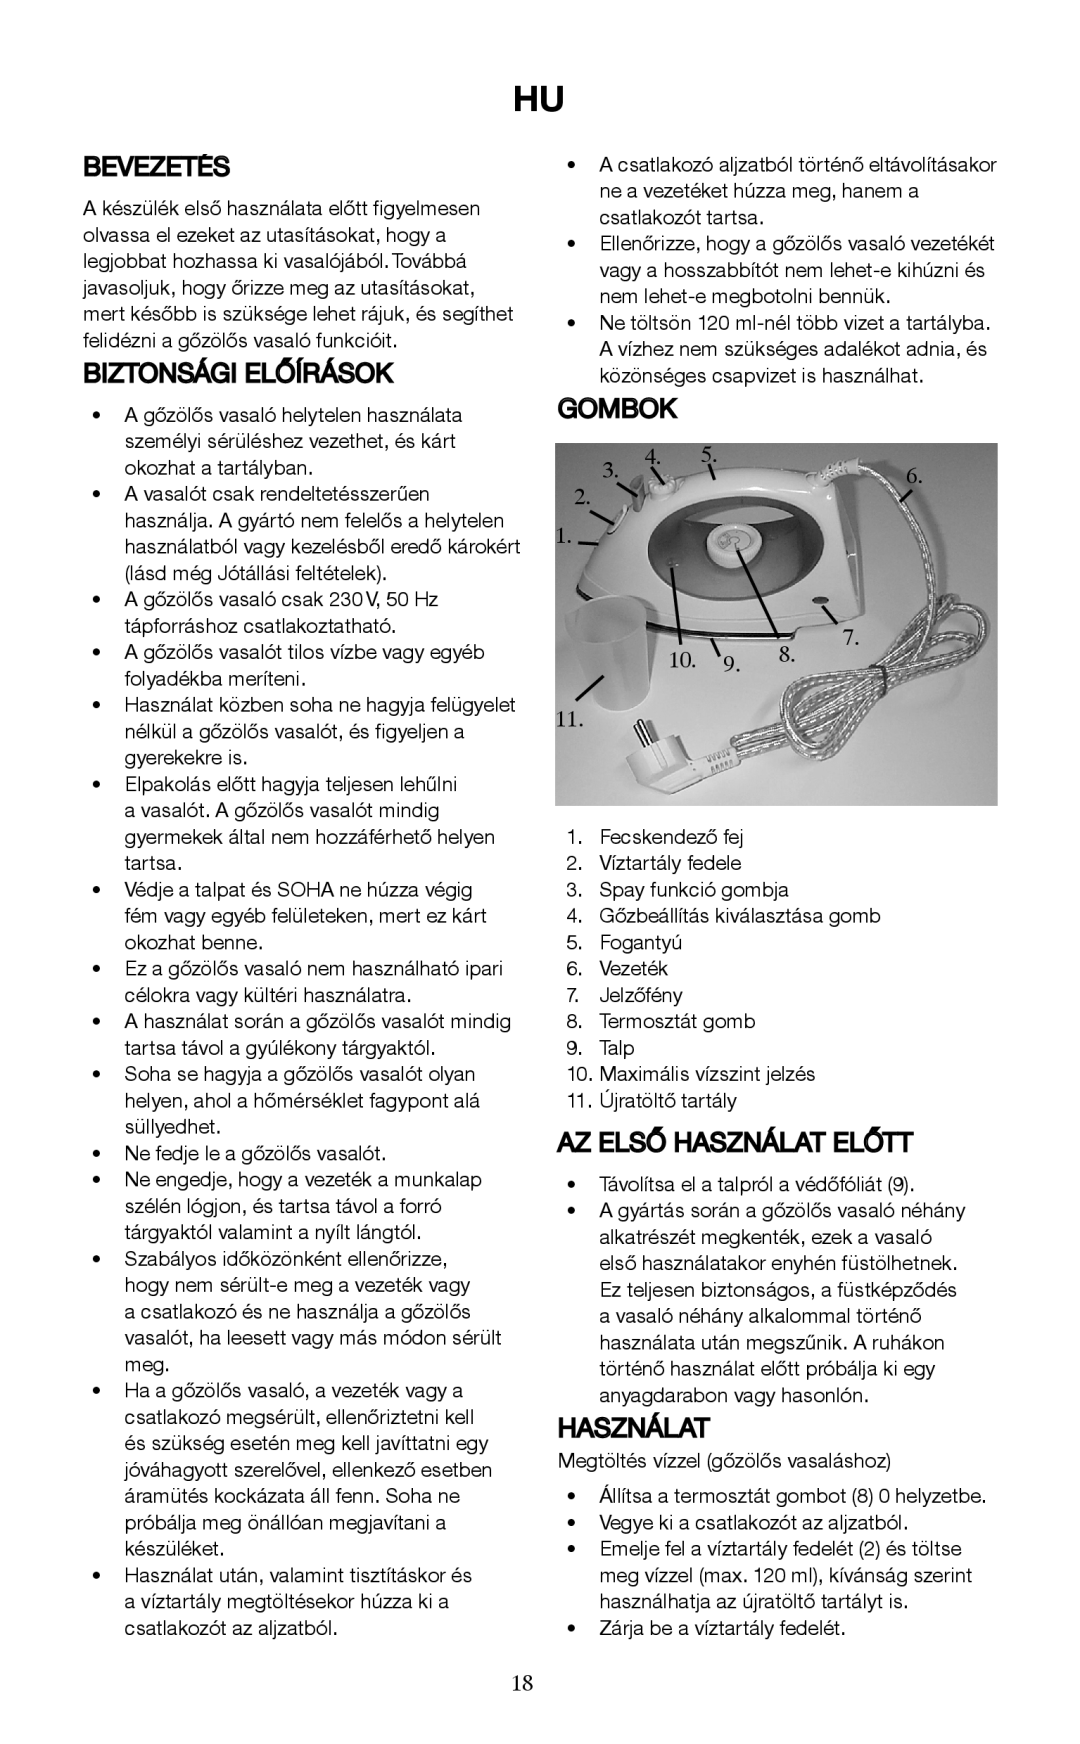 Melissa 741-047 manual Bevezetés, Biztonsági Előírások, Gombok, Az Első Használat Előtt 